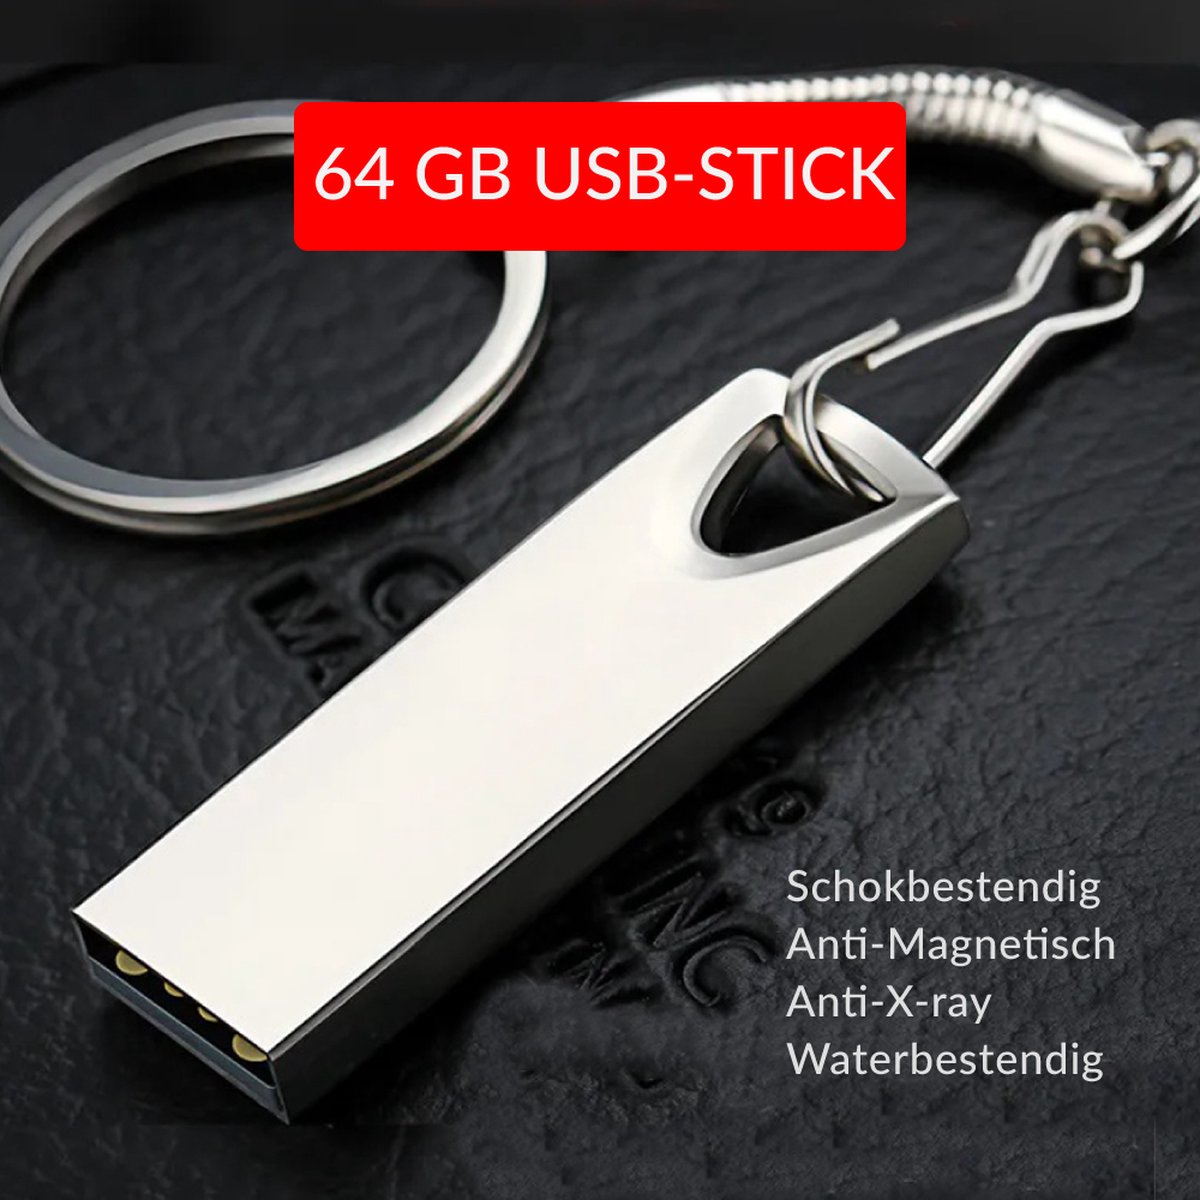 USB-Stick 64GB Metal | 4cm bij 2cm | USB 2.0 | Robuust Metalen Legering | Ziet er stijlvol uit | Makkelijk aan een sleutelbos vast te maken | 1 Jaar Garantie